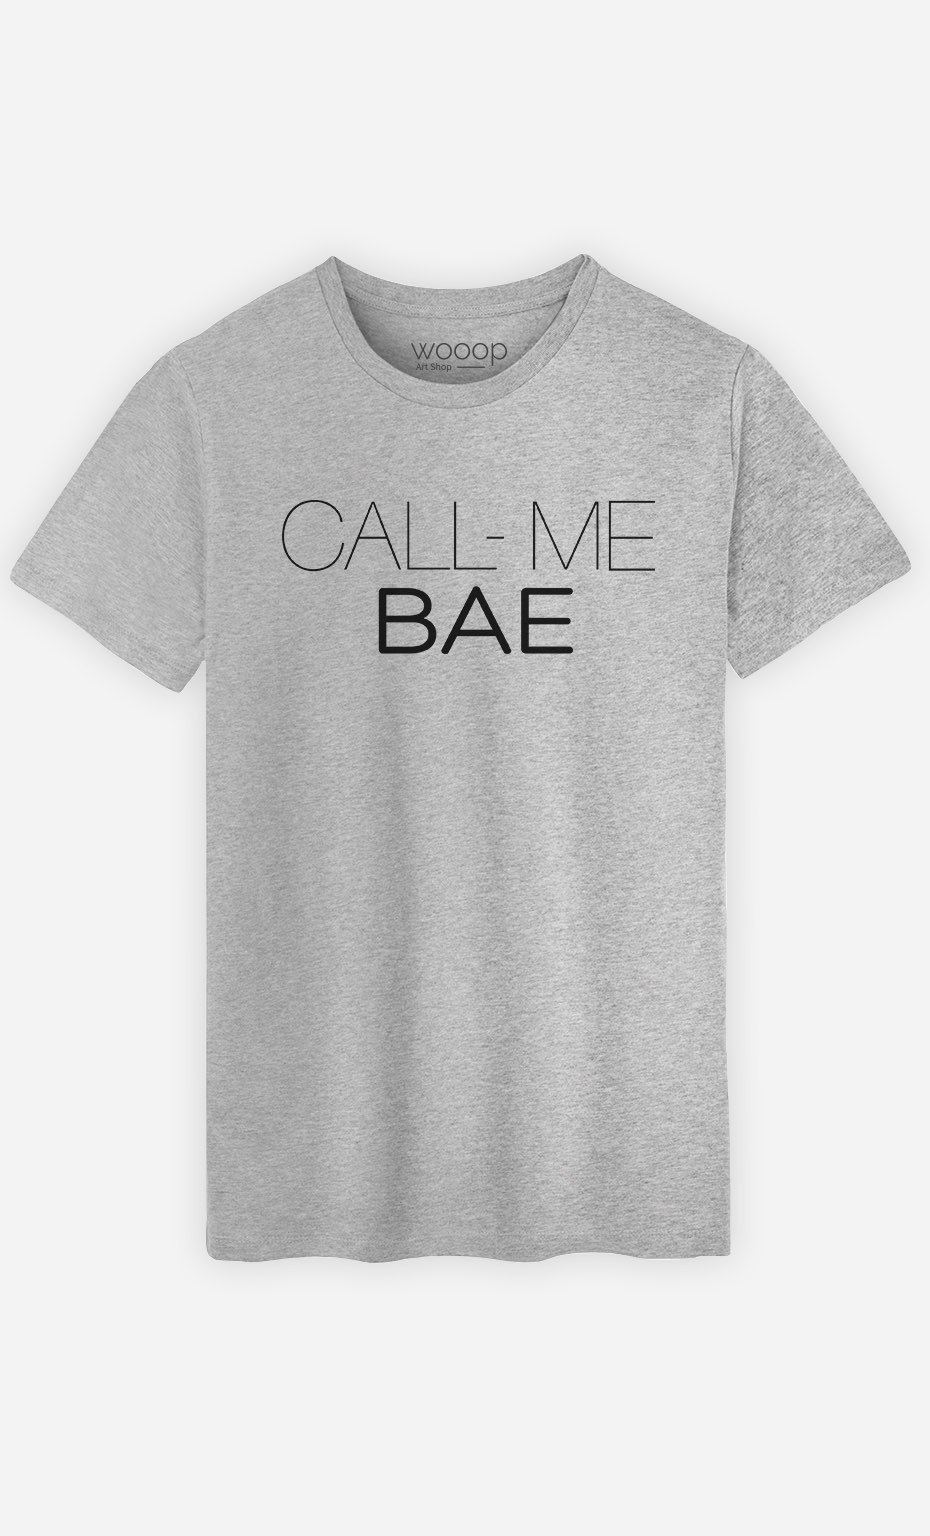 T-Shirt Call Me Bae